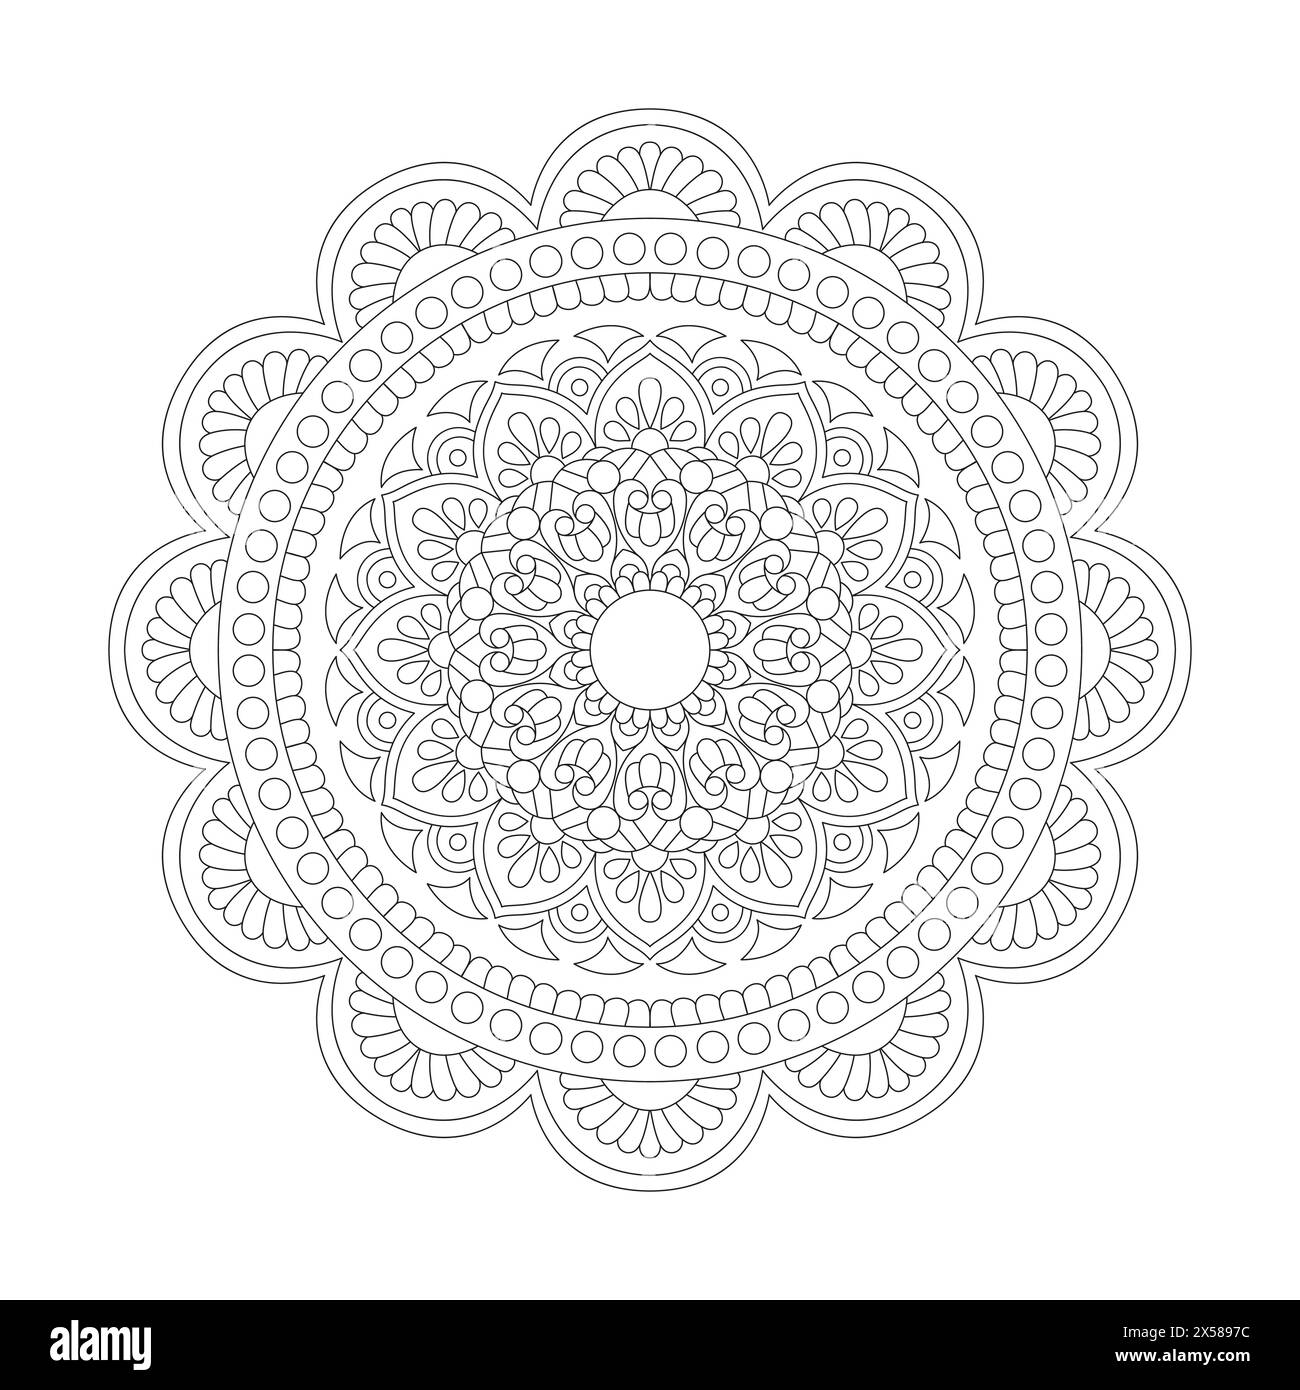 Pagina del libro da colorare Serene Spirals Mandala per l'interno del libro kdp. Petali tranquilli, capacità di rilassarsi, esperienze cerebrali, Harmonous Haven, pacifico porto Illustrazione Vettoriale